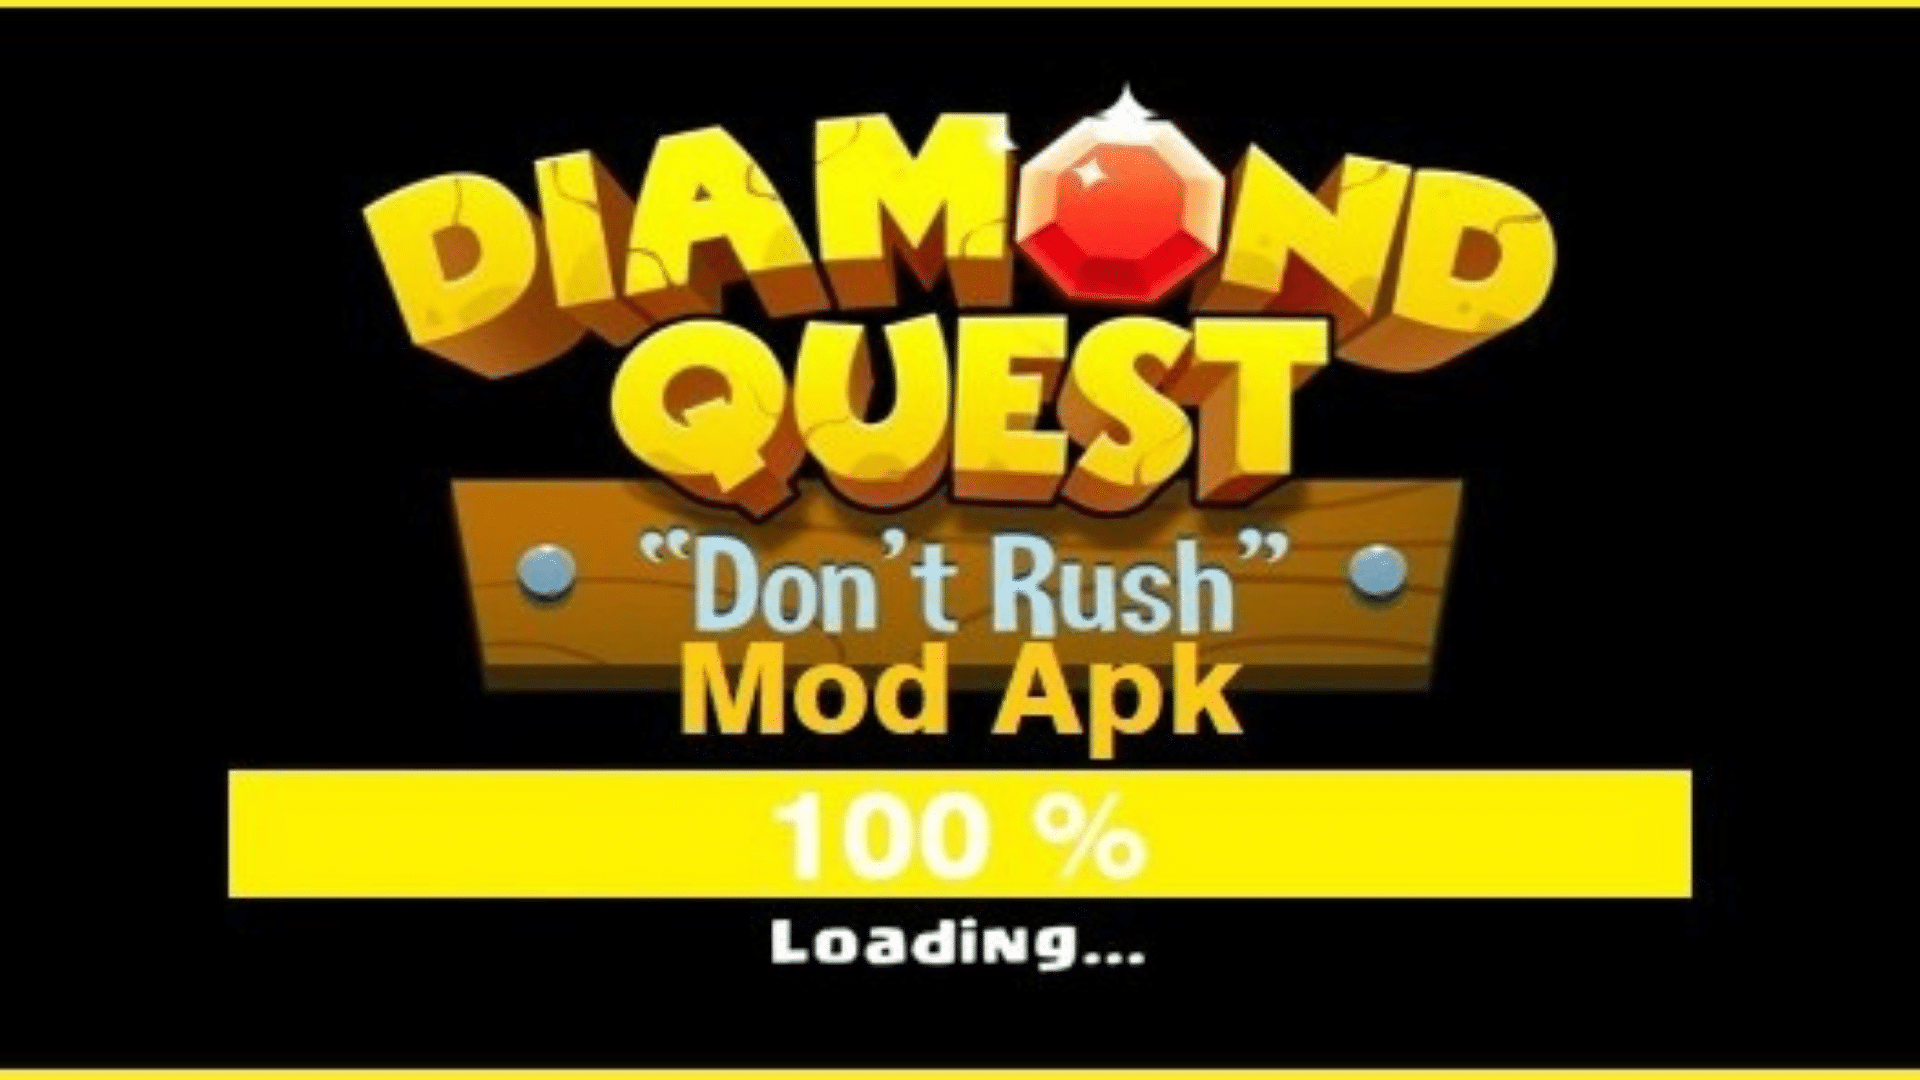 Diamond quest mod apk